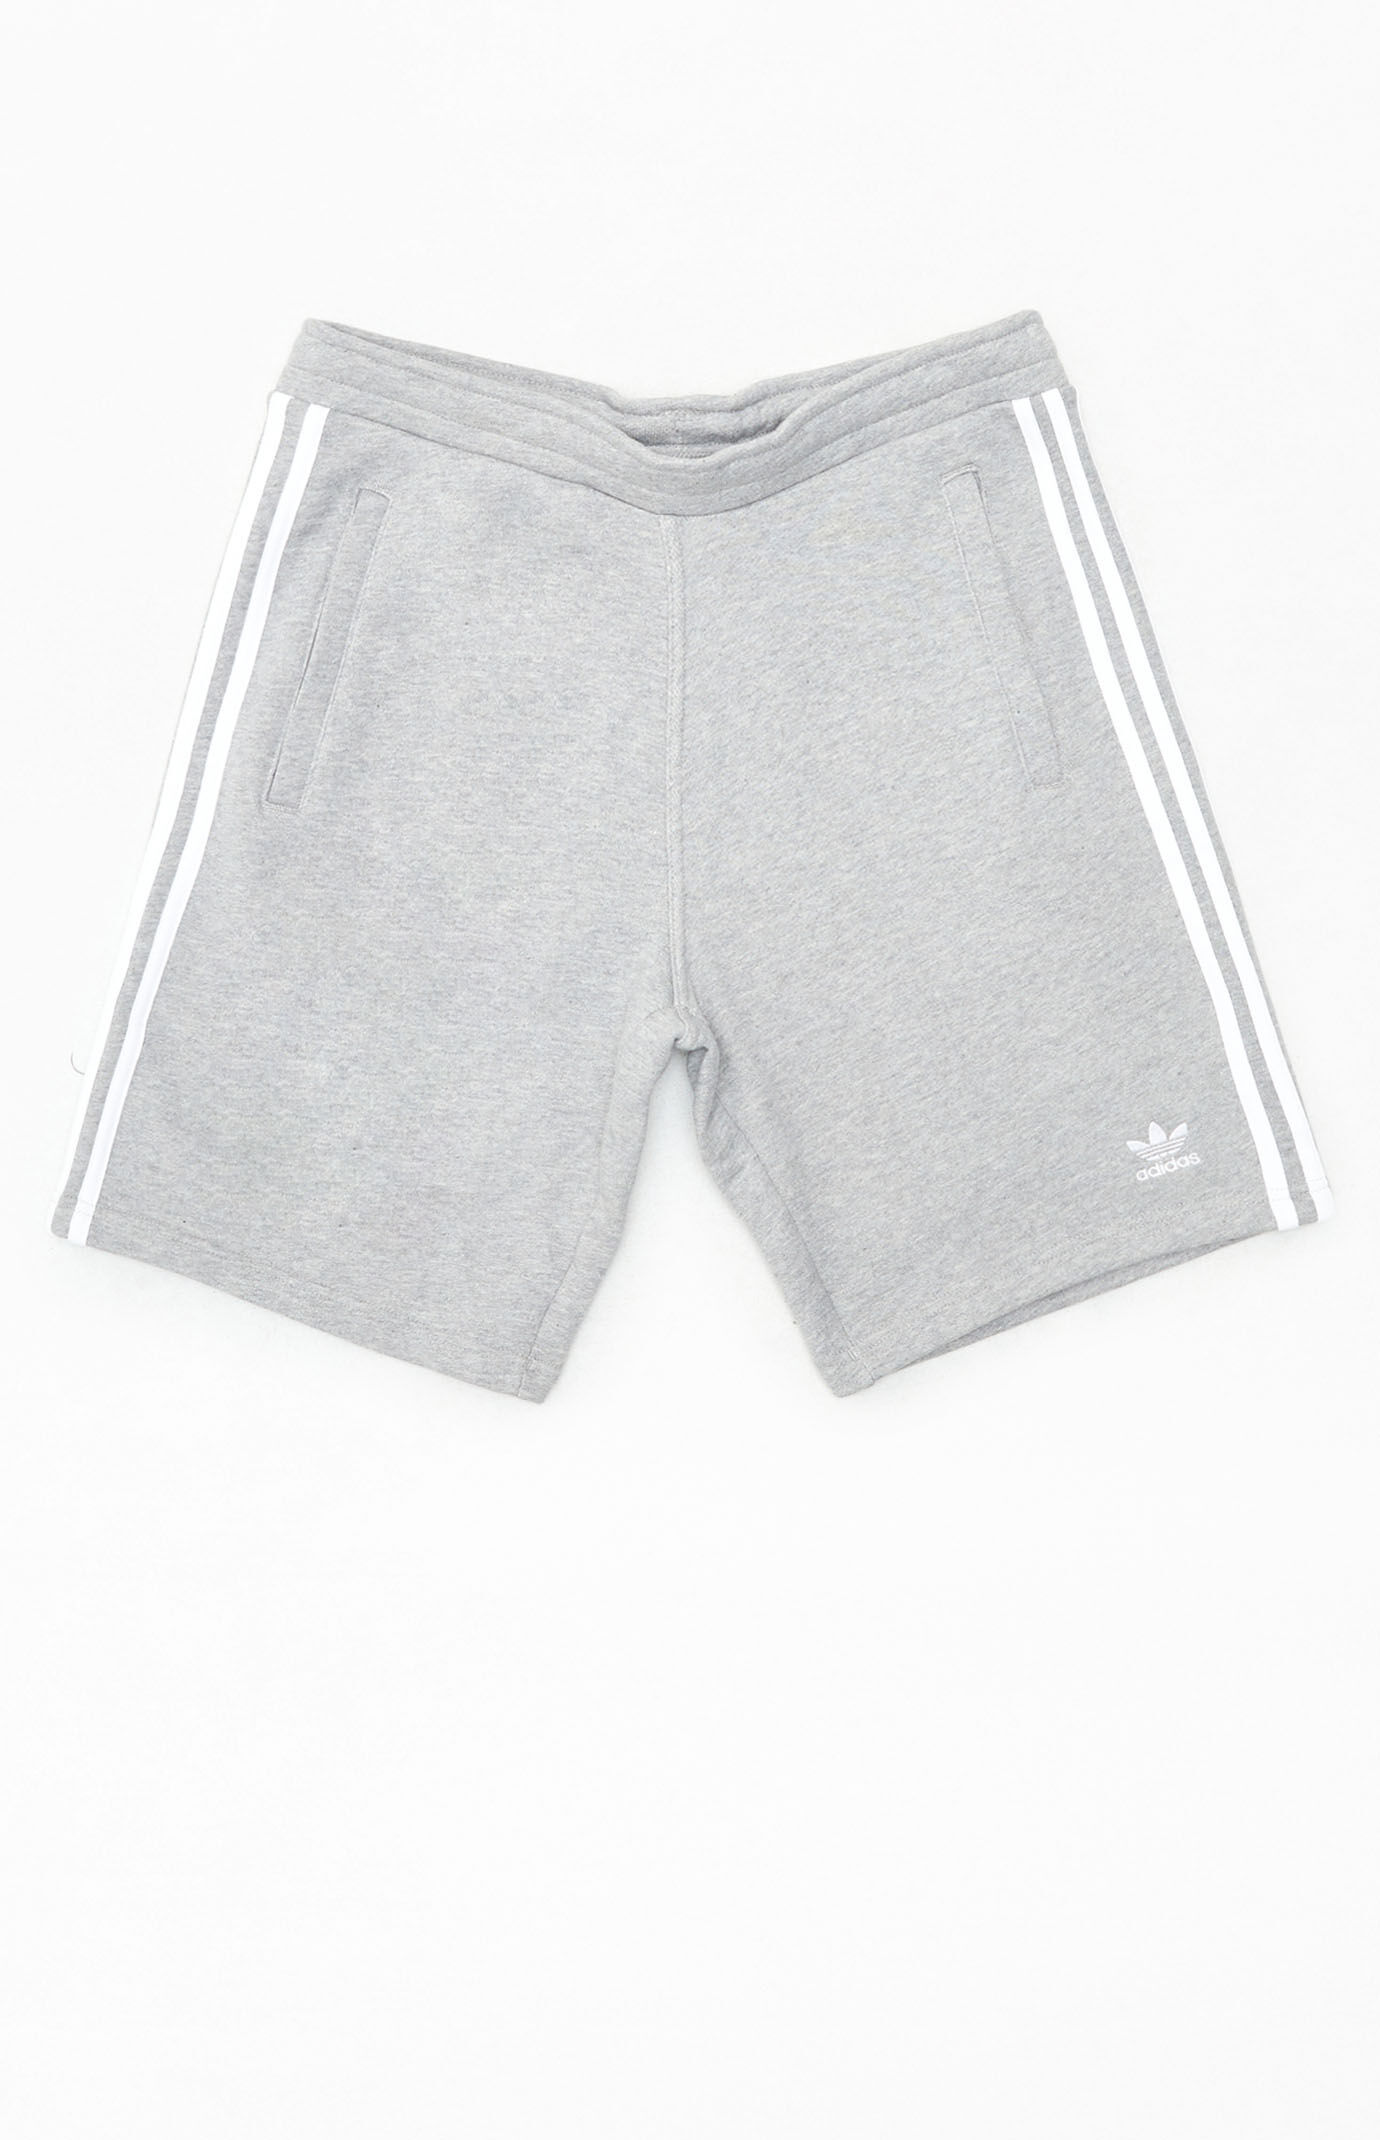 pacsun adidas shorts